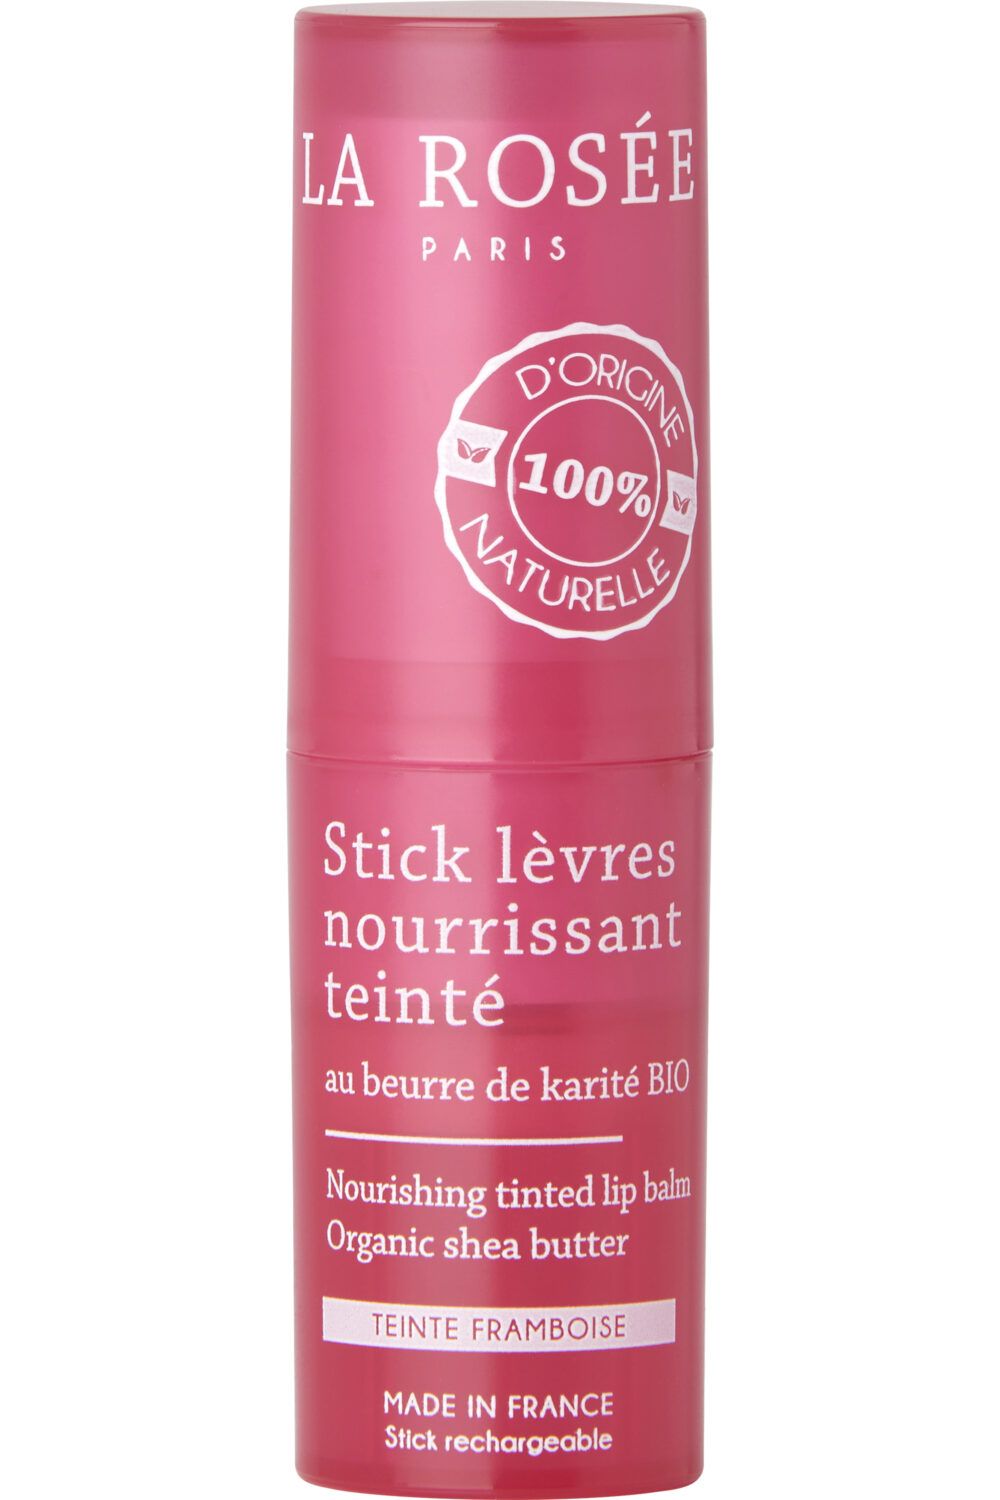 La Rosée - Stick lèvres nourrissant teinté rechargeable au beurre de karité BIO Stick à lèvres